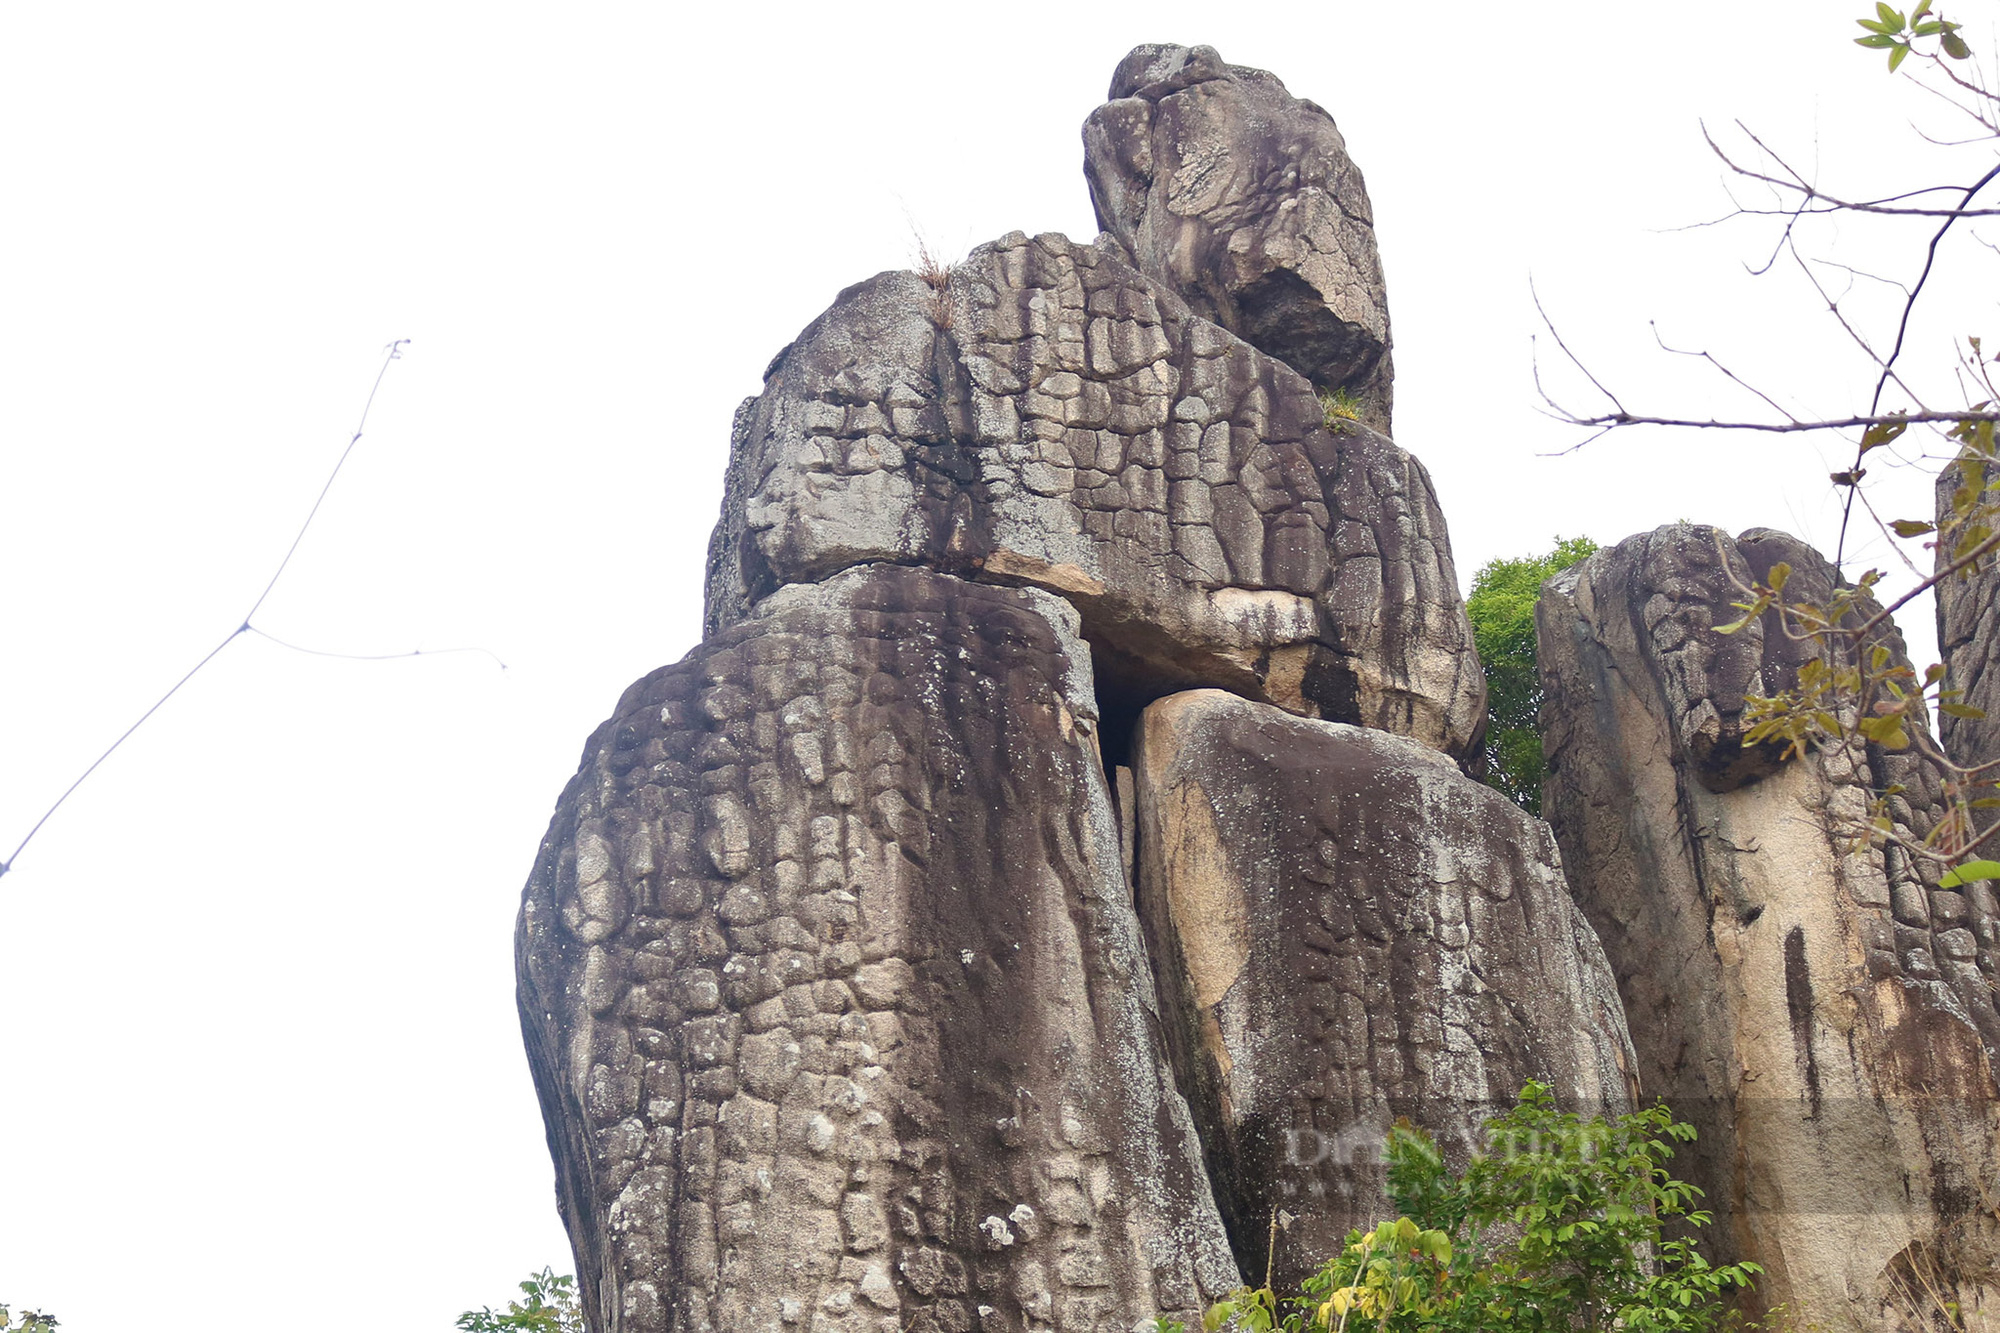 Gia Lai: Chiêm ngưỡng những bức tượng đá có hình thù kỳ lạ, kỳ vĩ trên đỉnh Chư Pao - Ảnh 4.